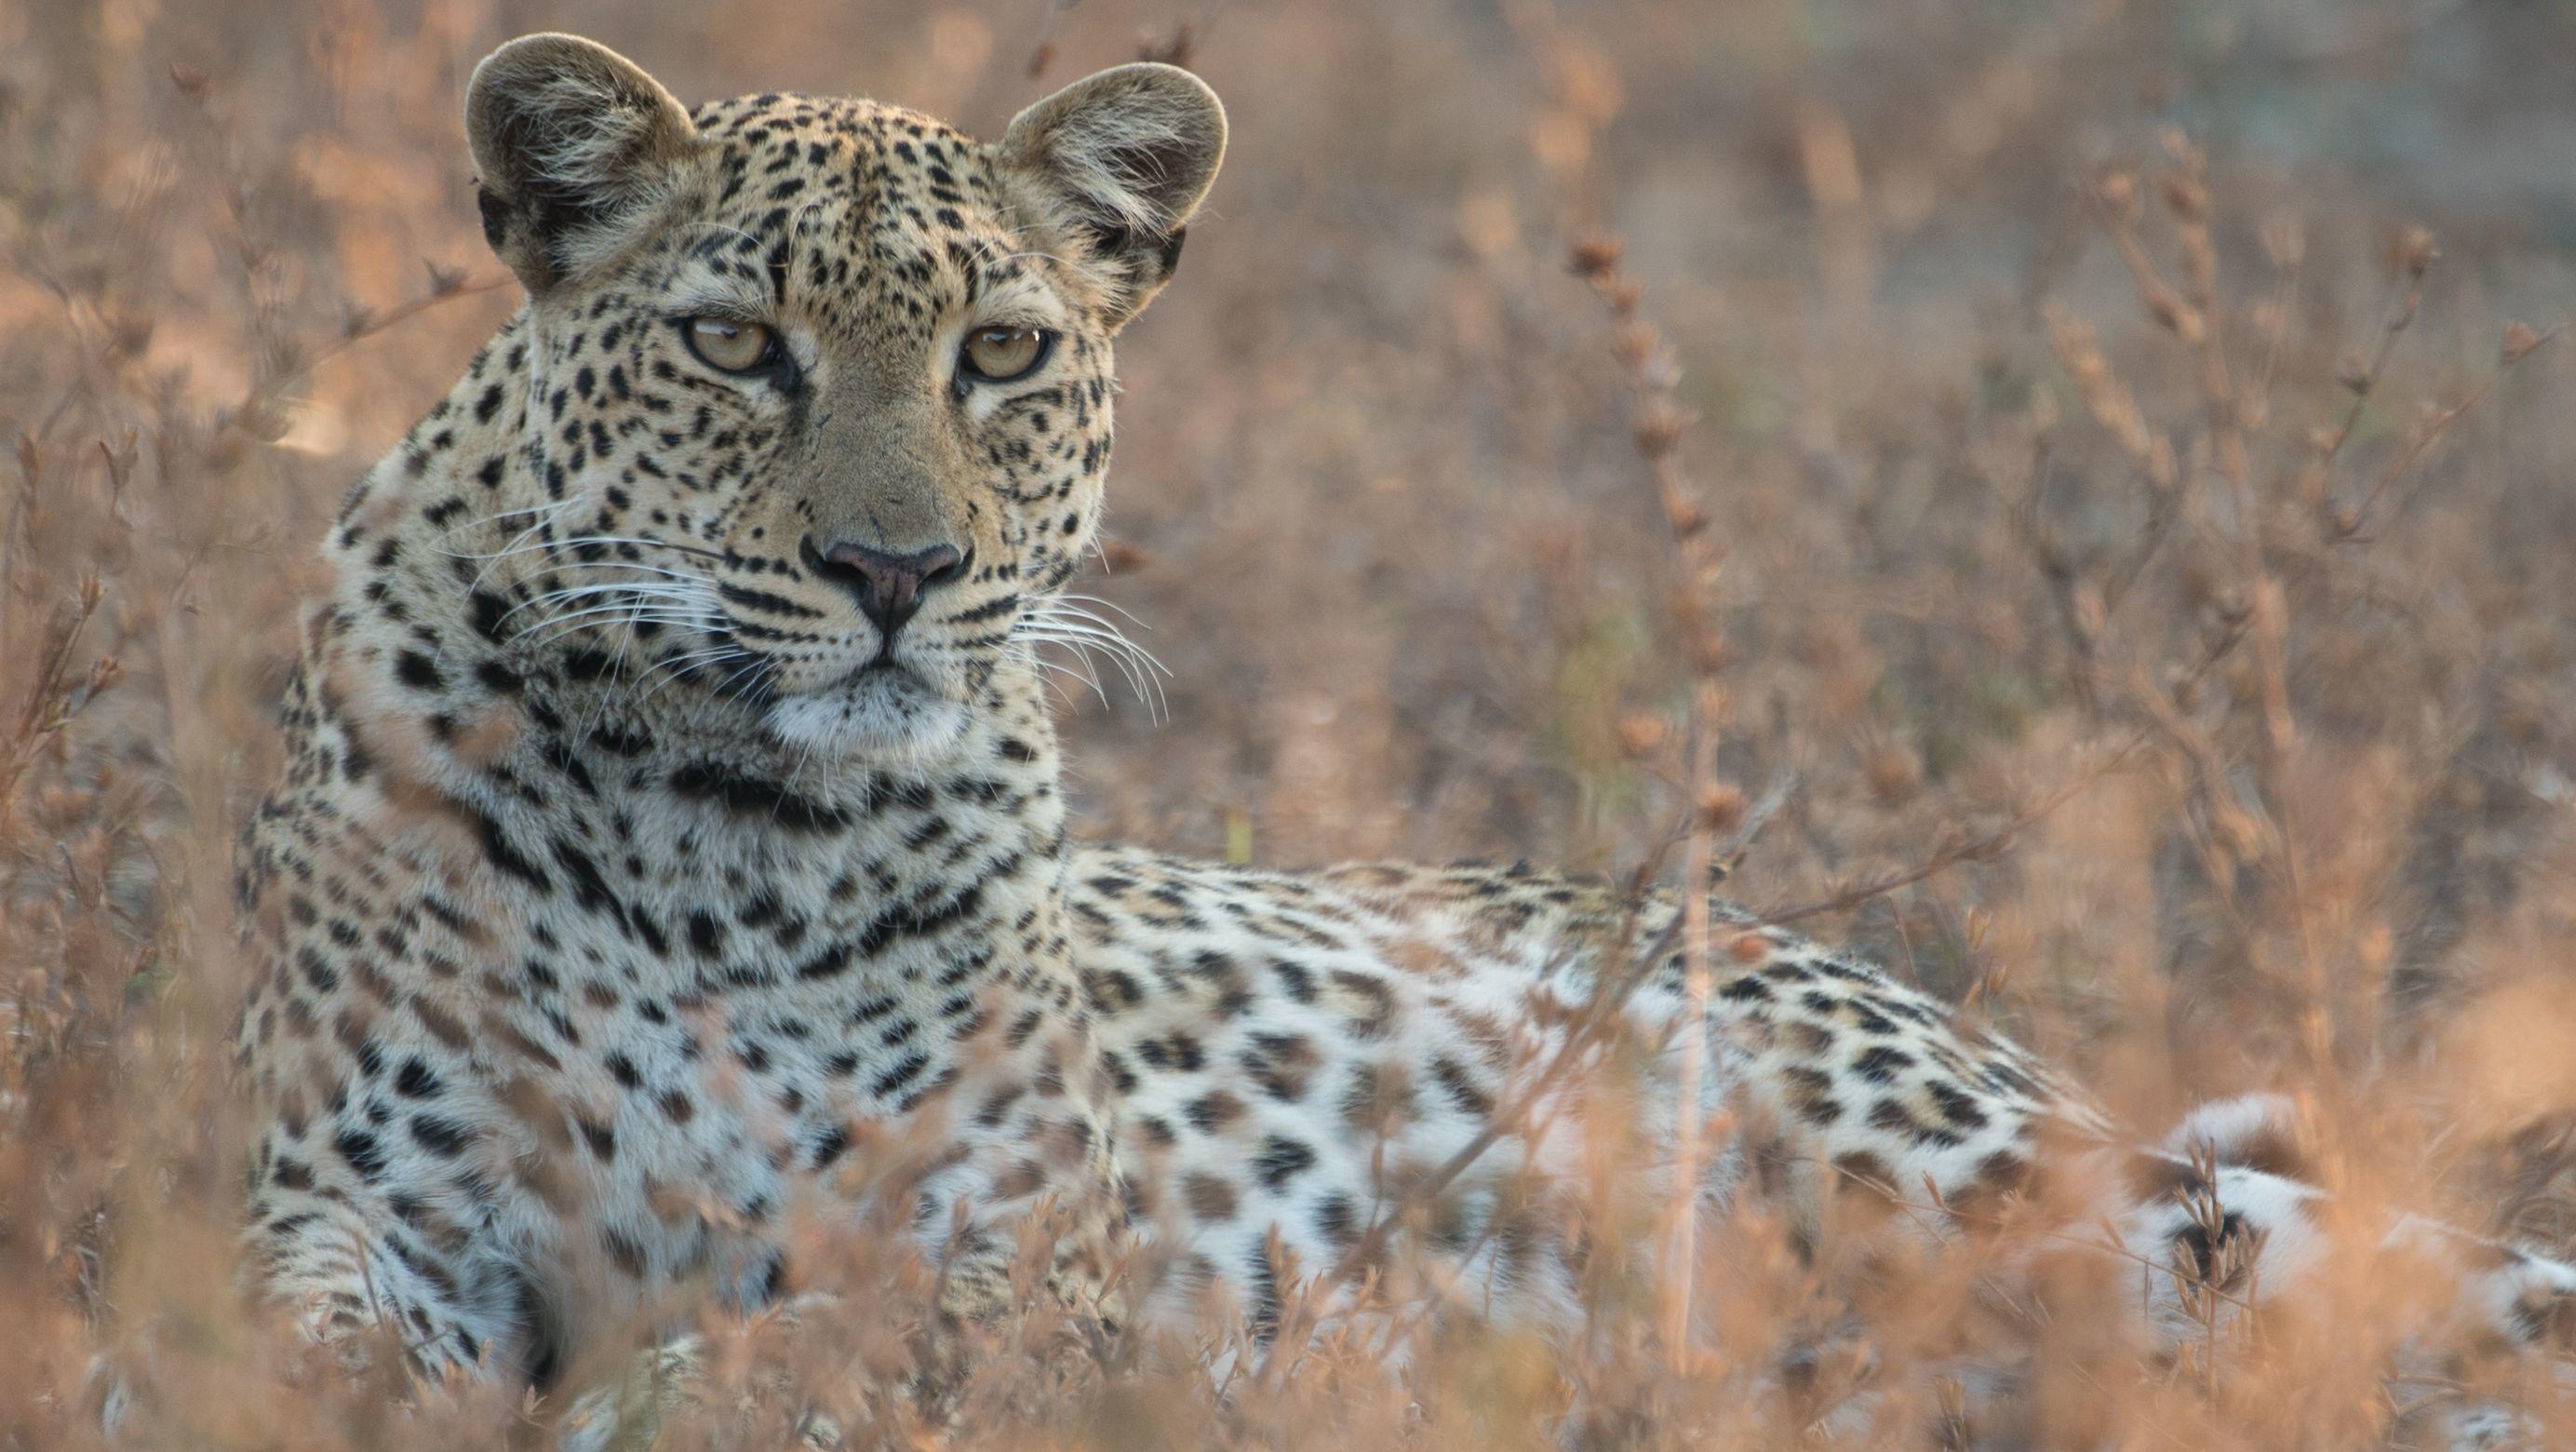 Malika jagt - Abenteuer einer Leopardin